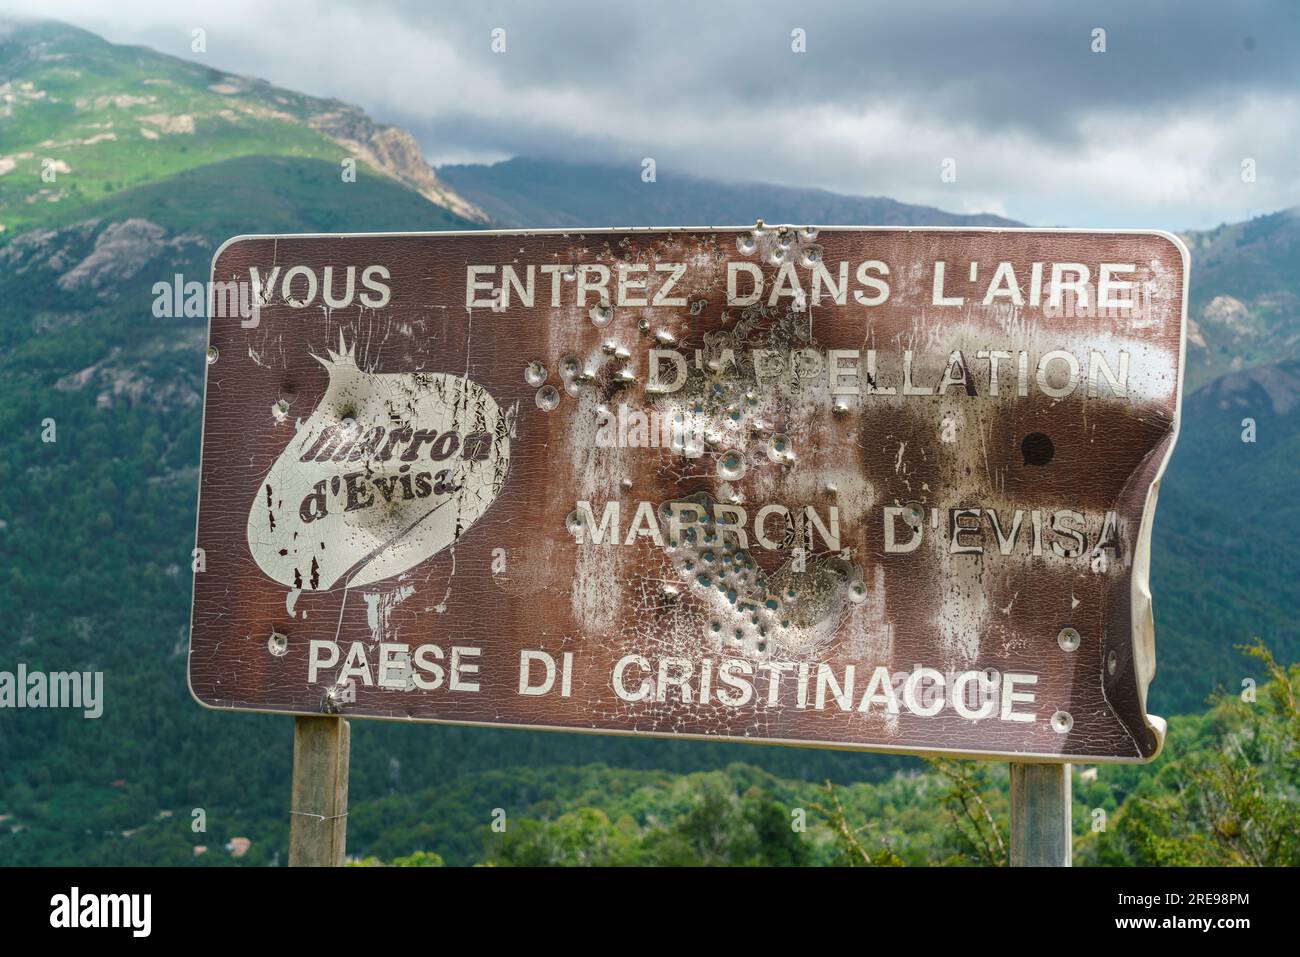 Von Kugeln durchloechertes Schild mit Hinweis auf das Marronengebiet Eivisa auf der Passstrasse von Christinacce, Korsika, Frankreich, Europa Banque D'Images